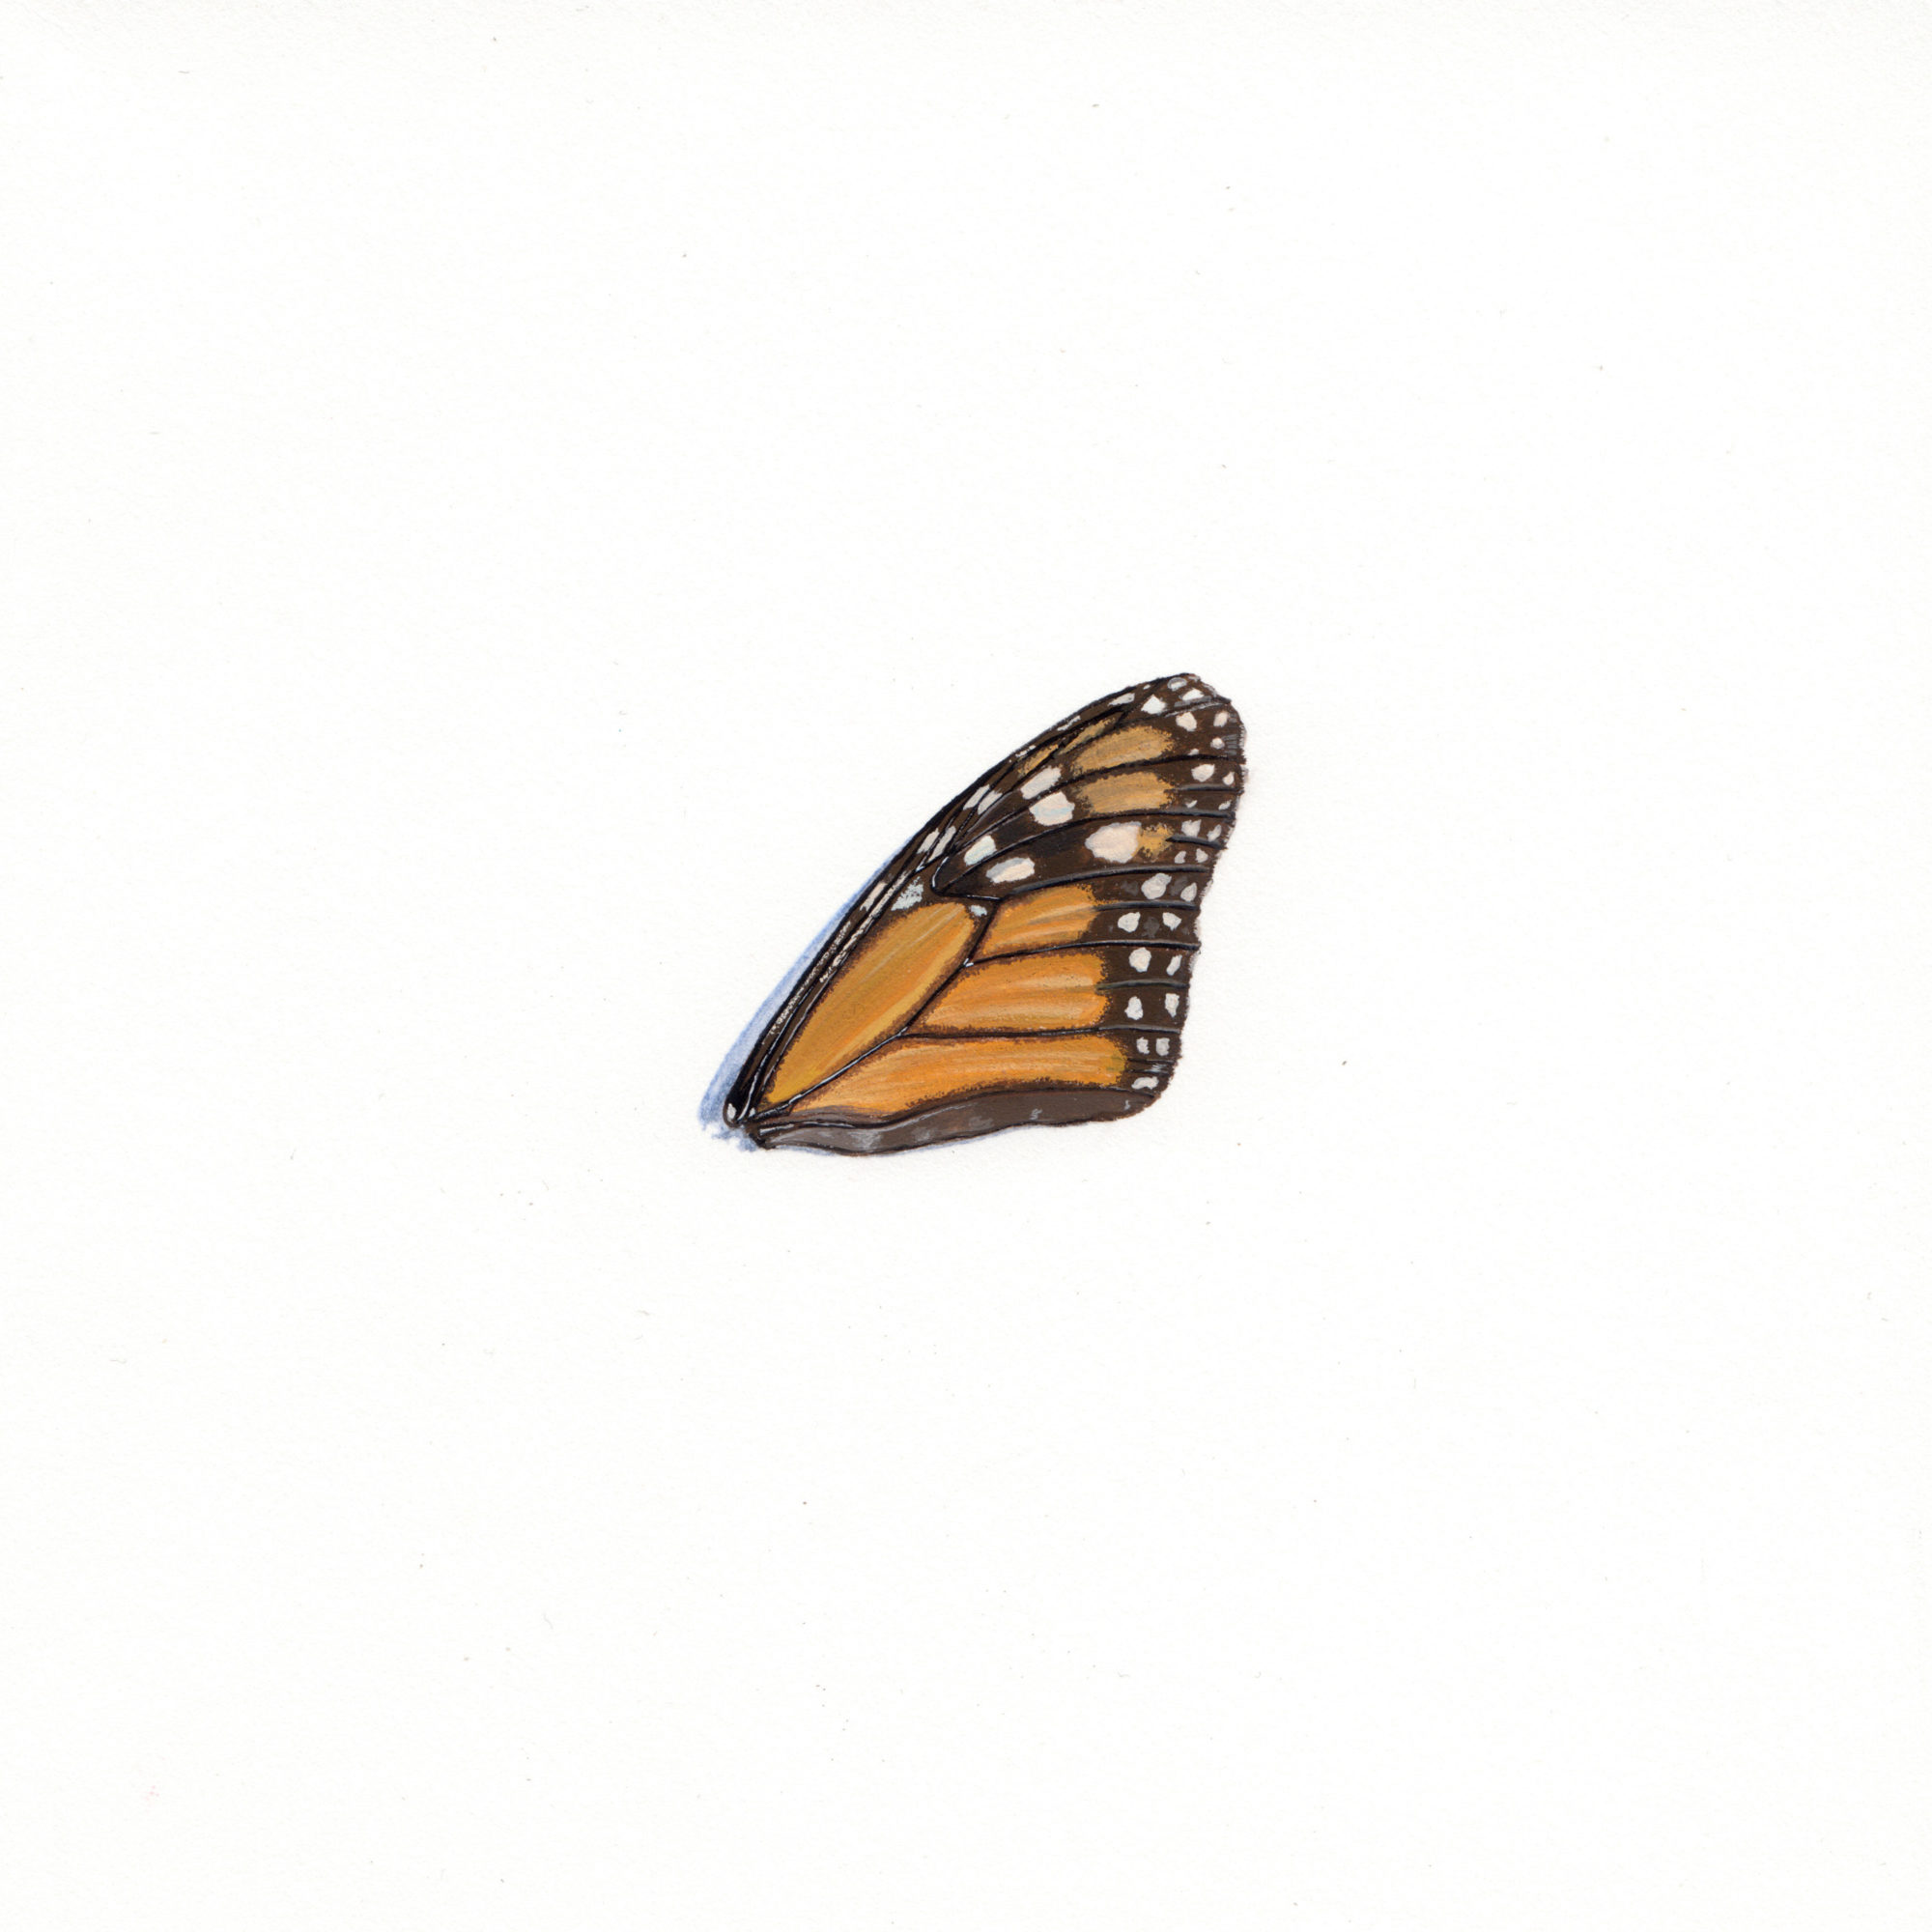 Apophenia: Butterfly Wing